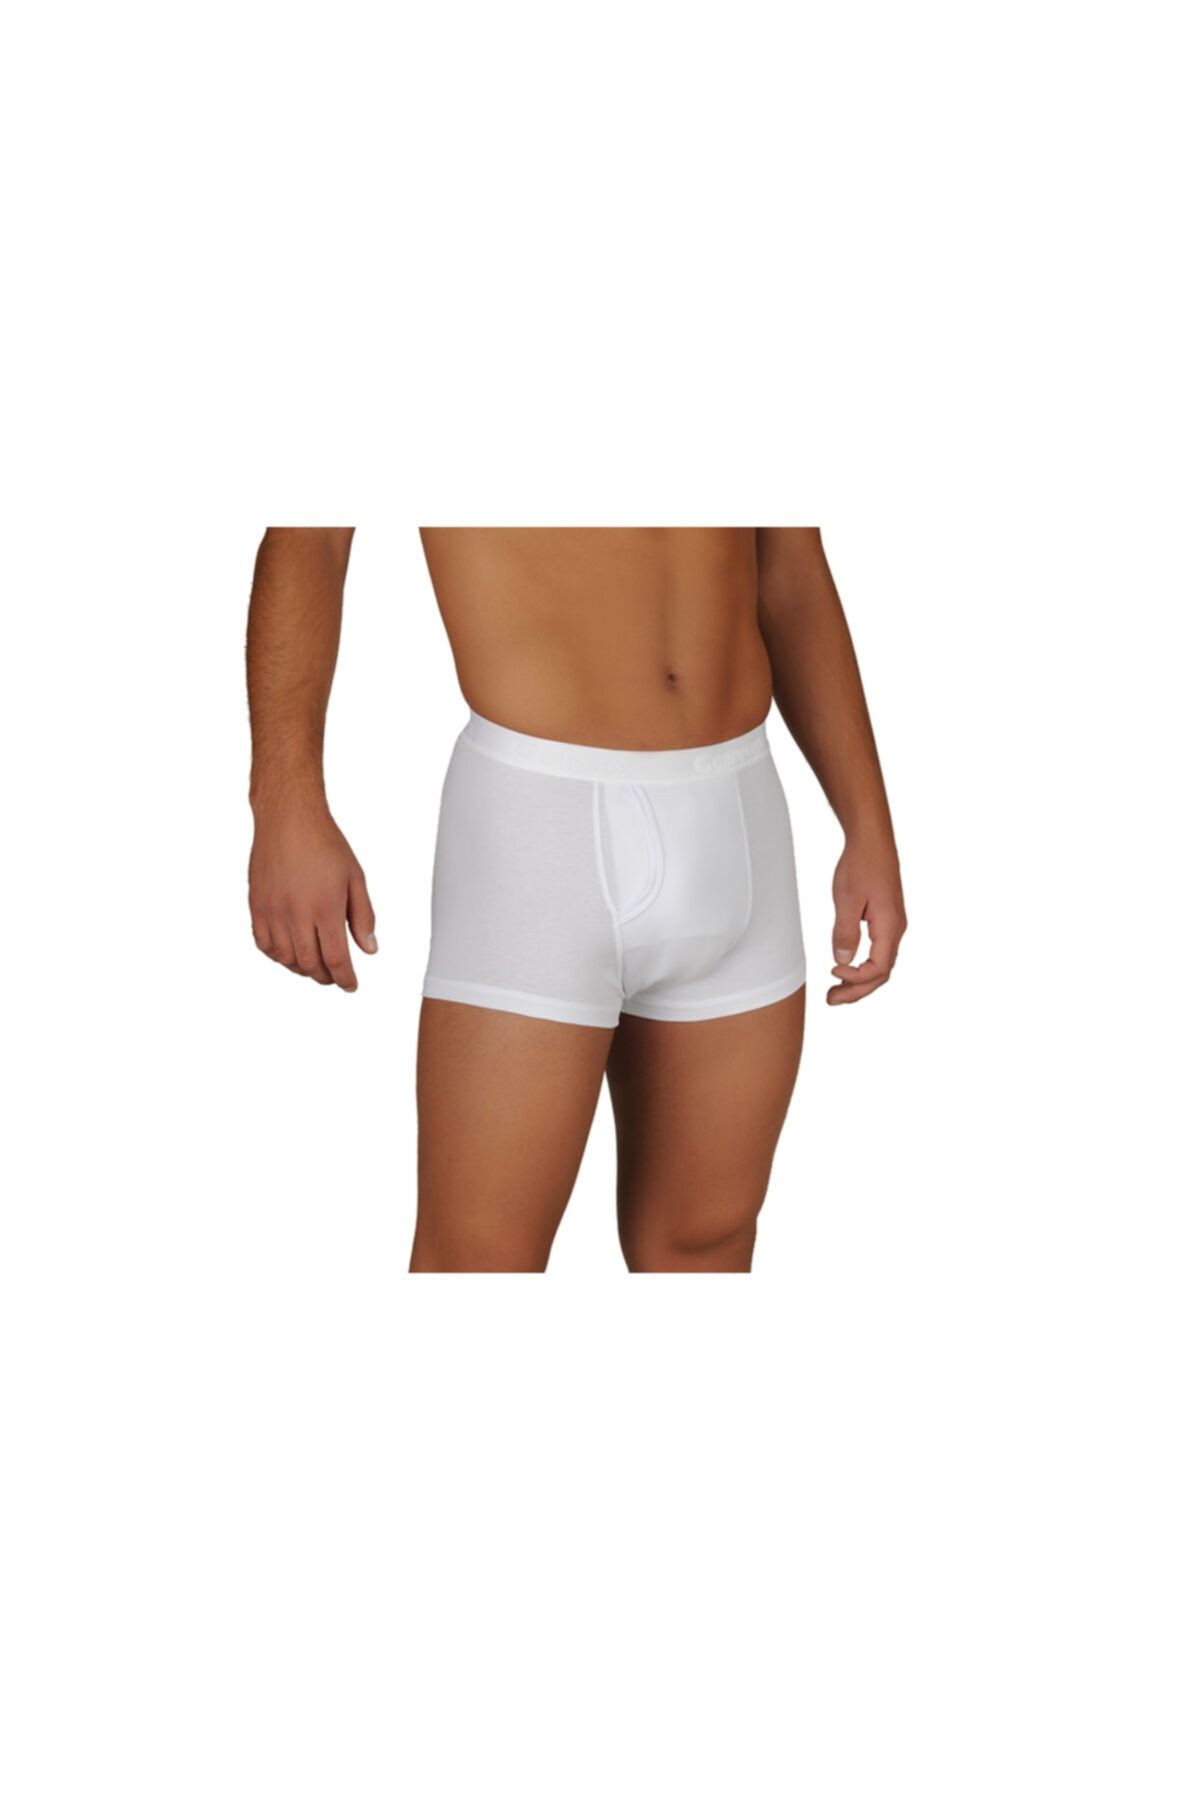 Caretex® Boxer Mens Bladder Incontinence Underwear